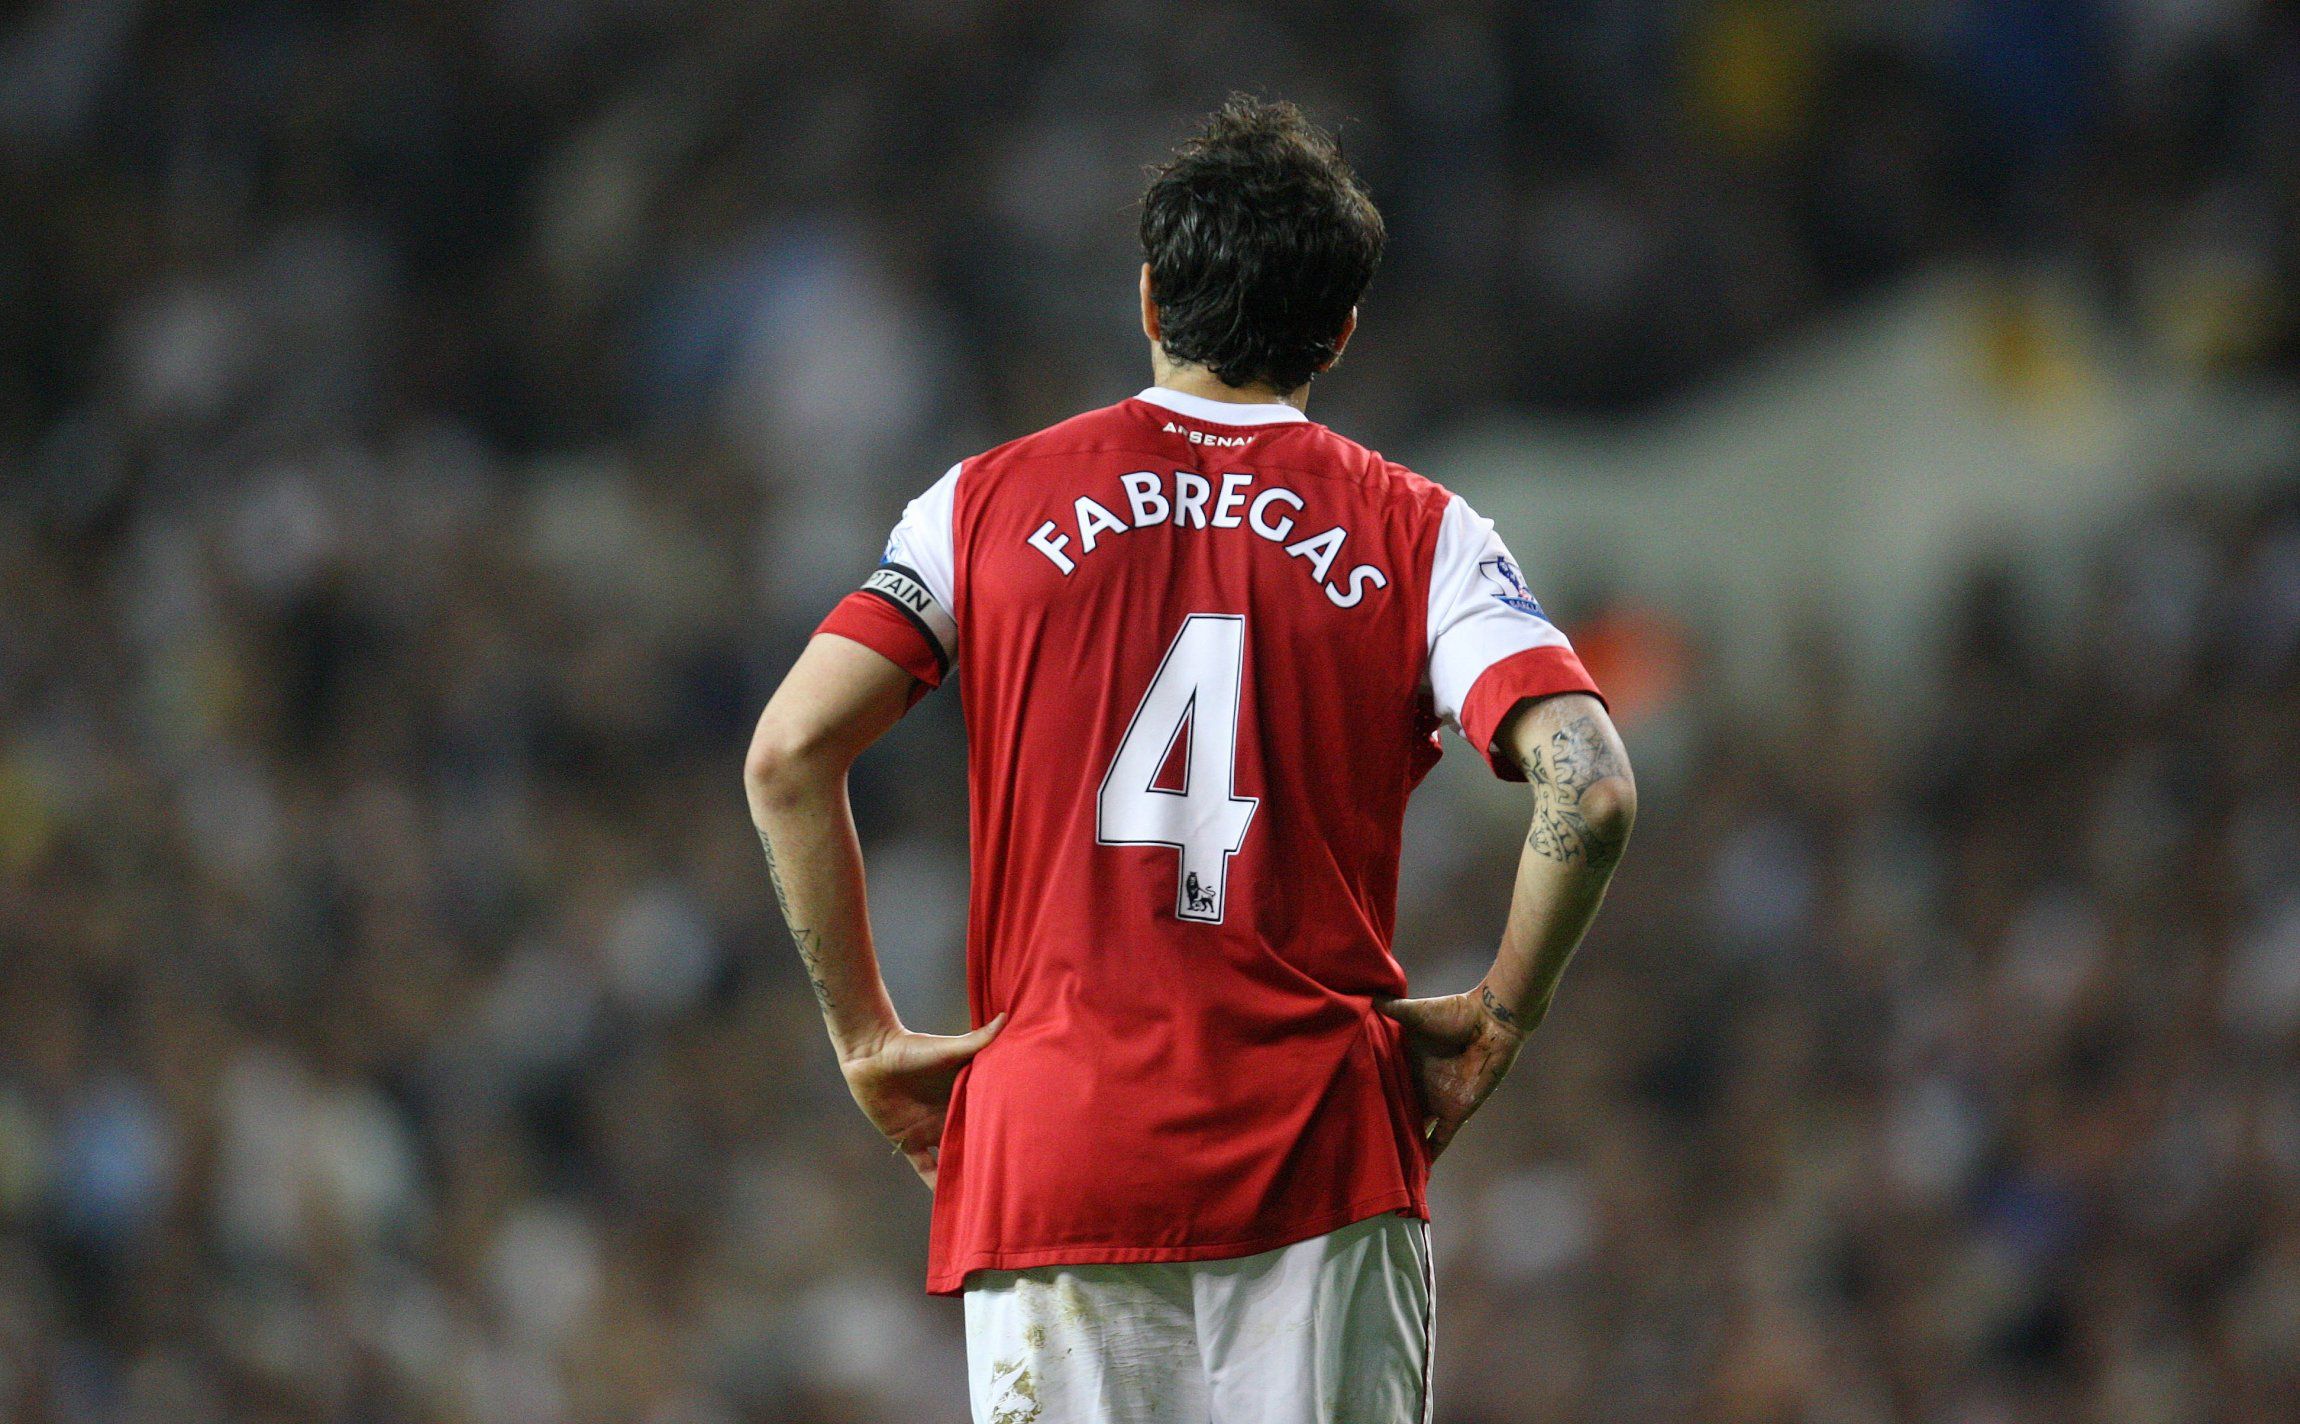 Former-Arsenal-midfielder-Cesc-Fabregas-looks-on-against-Spurs